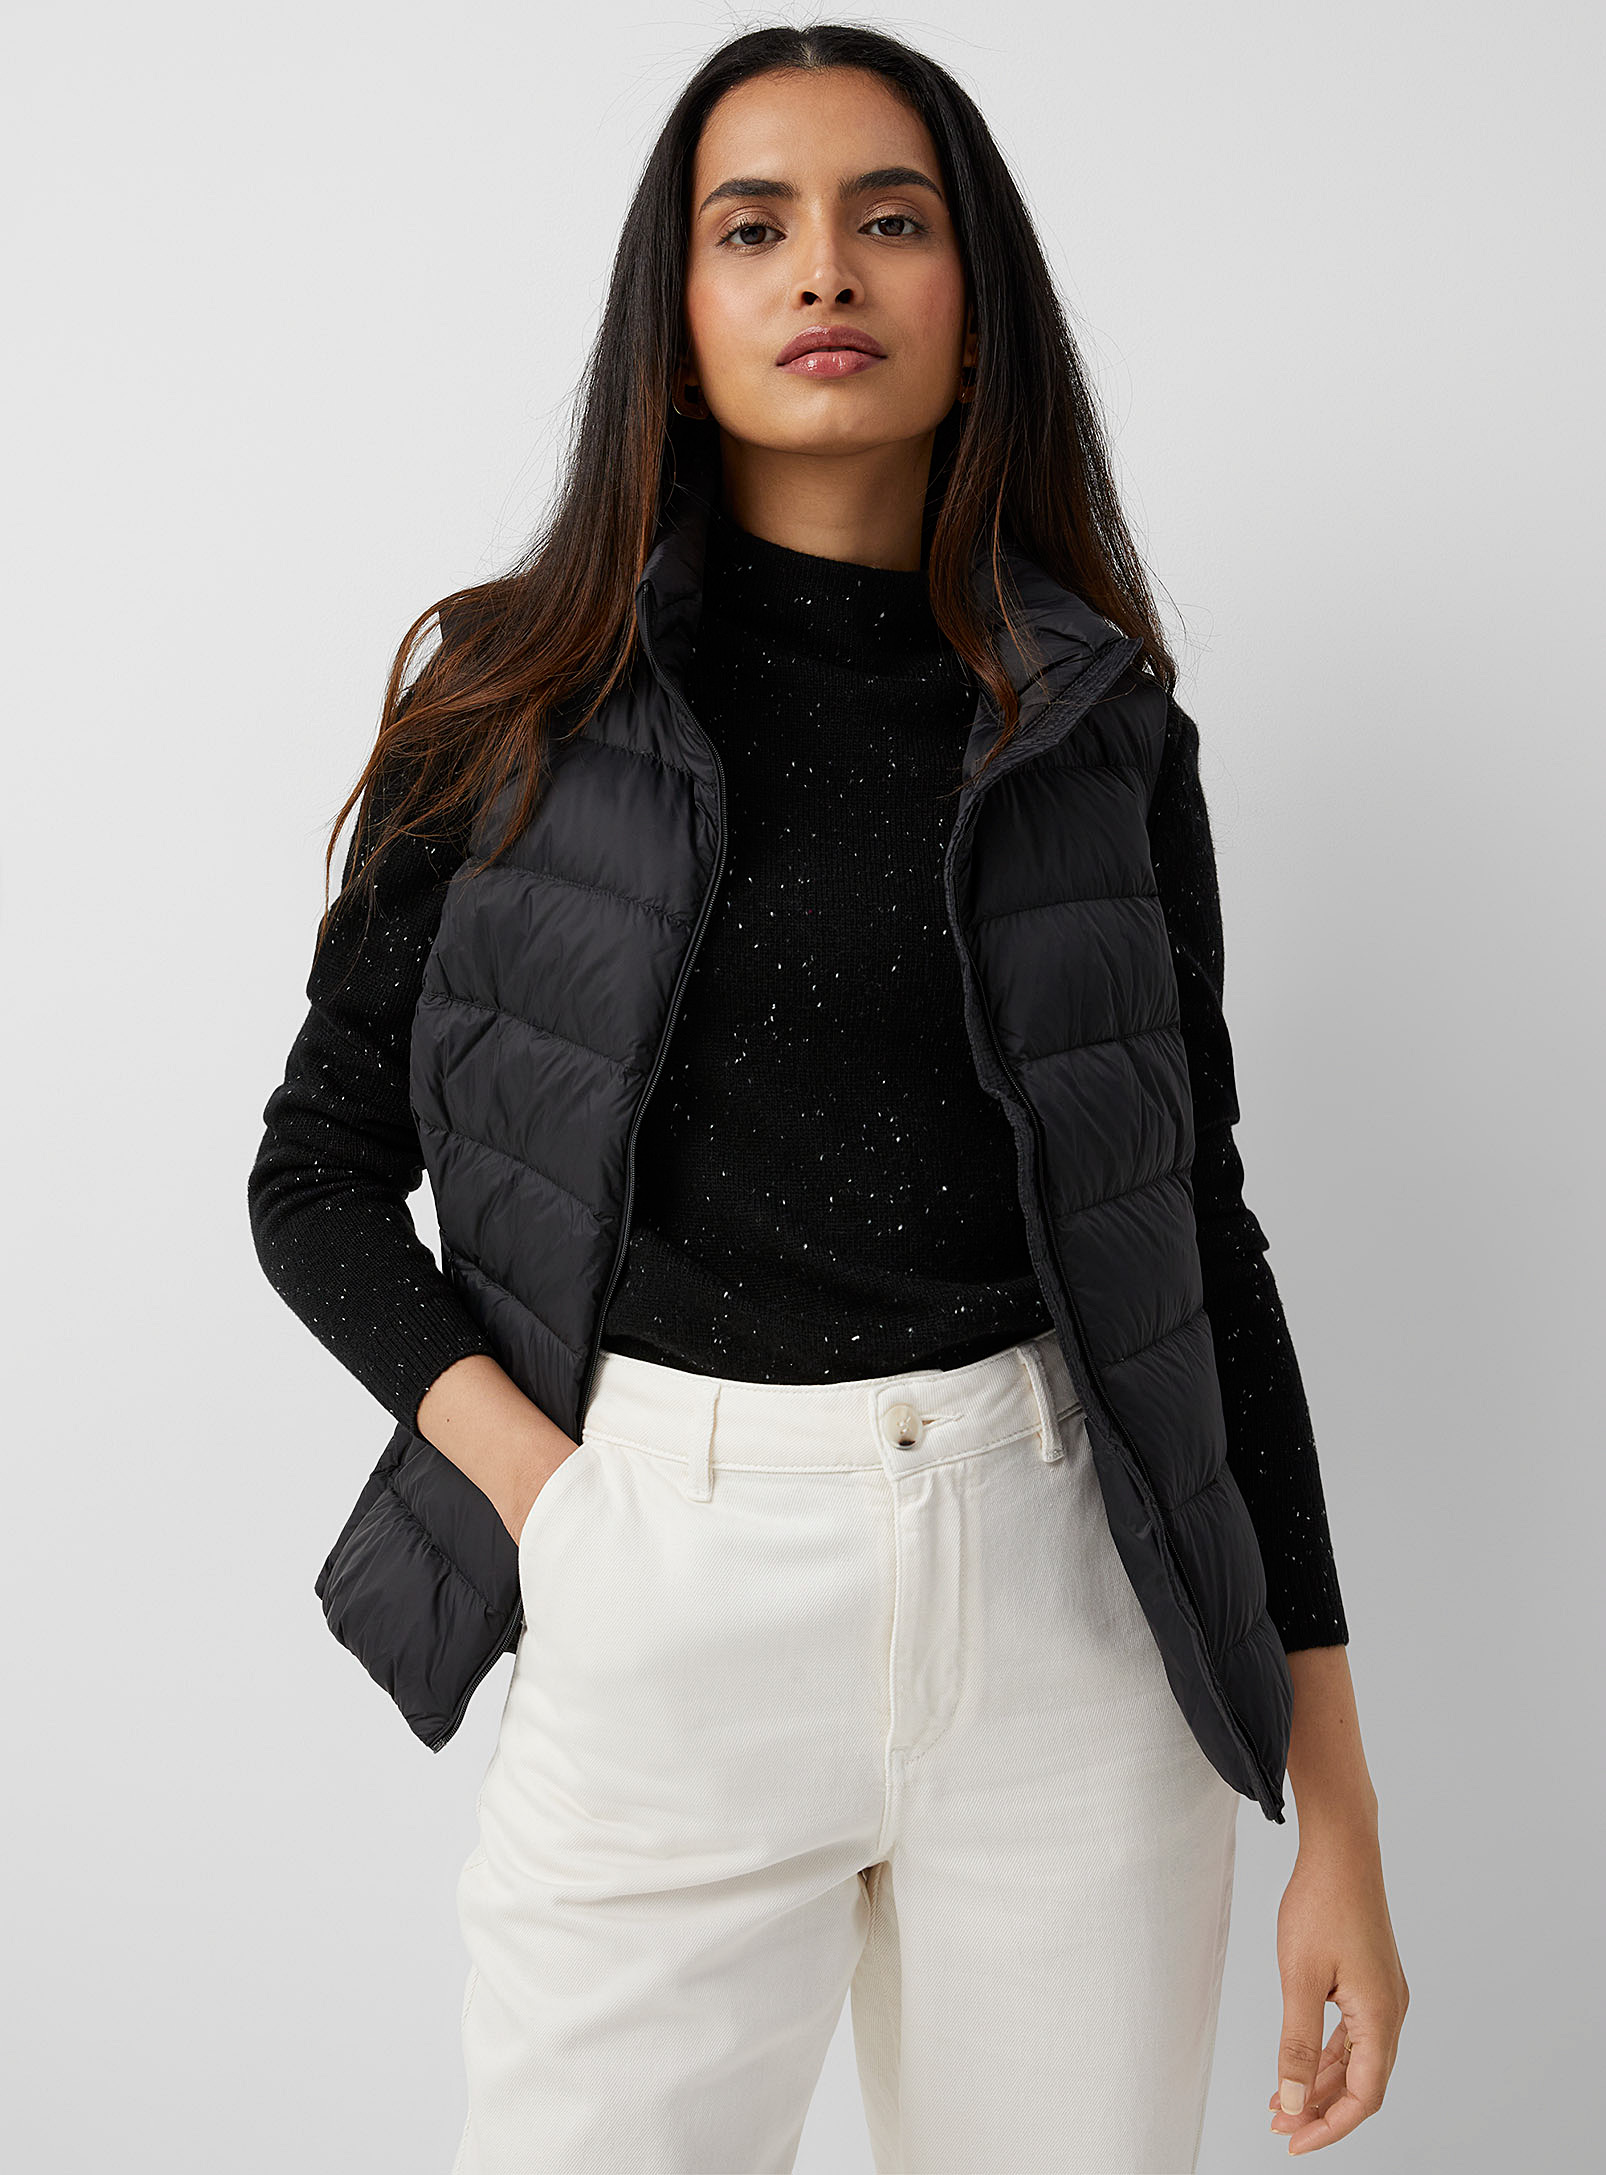 Contemporaine - Women's Packable sleeveless puffer jacket